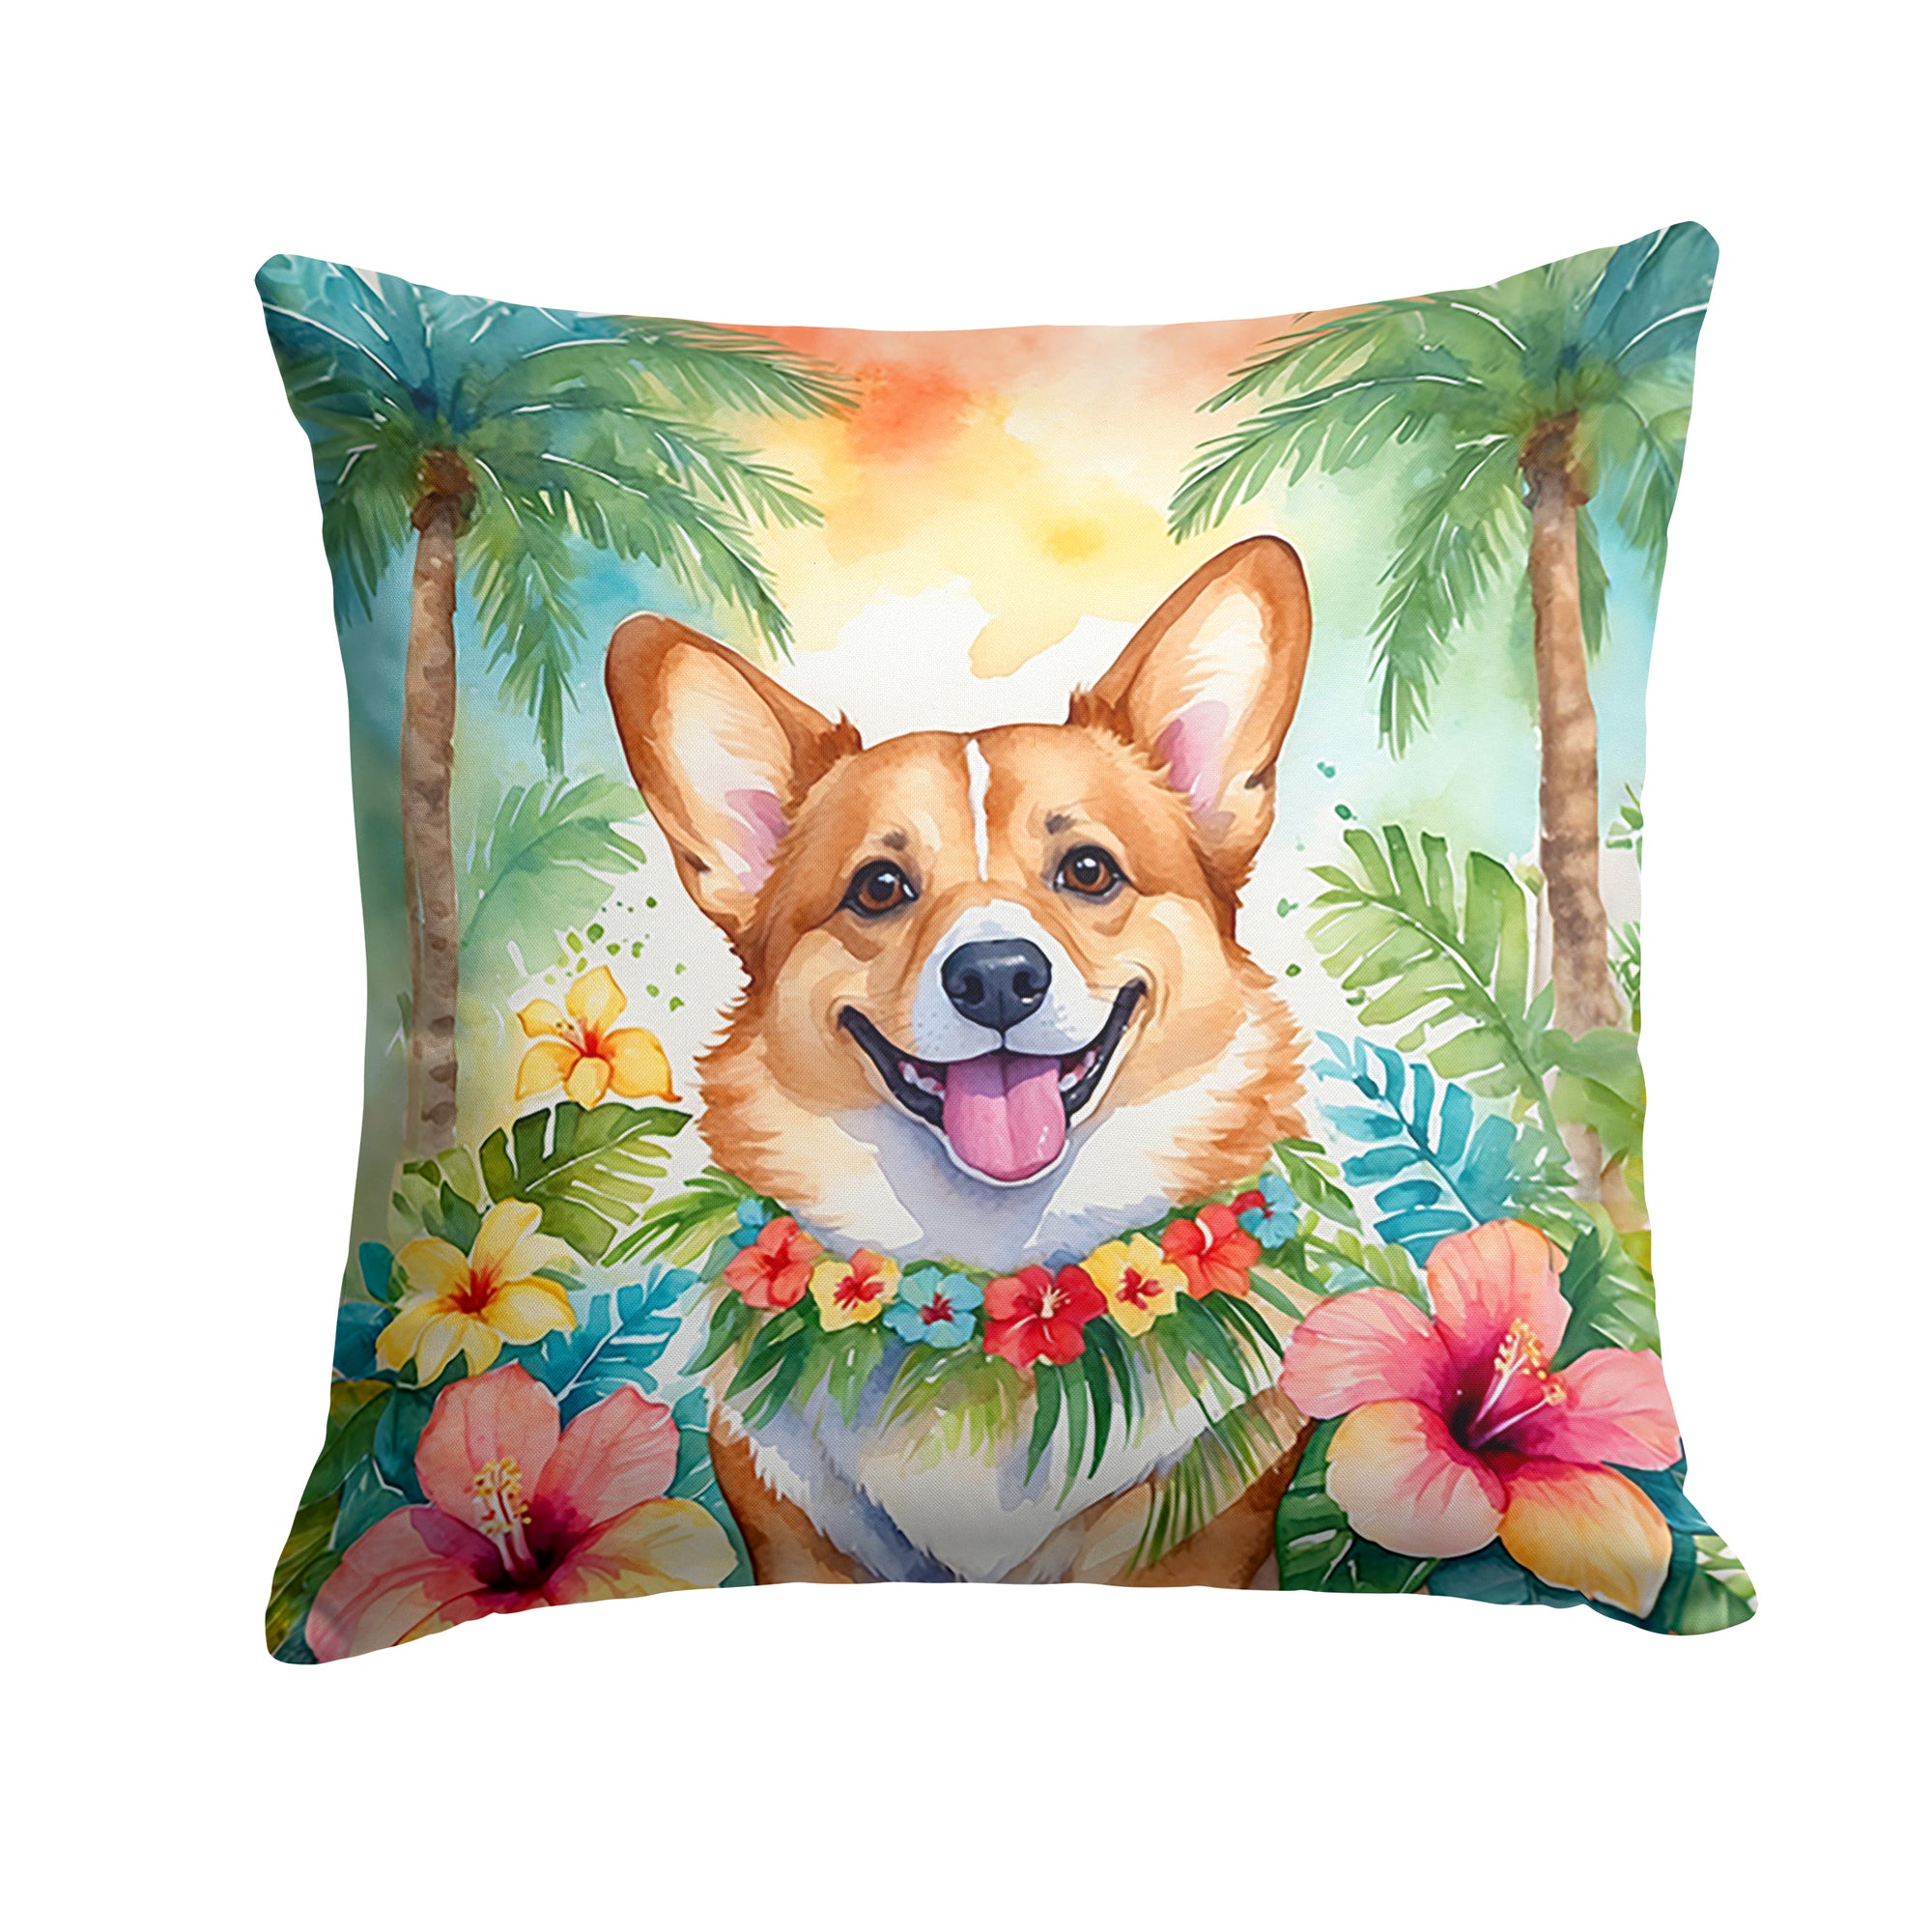 Buy this Corgi Luau Throw Pillow